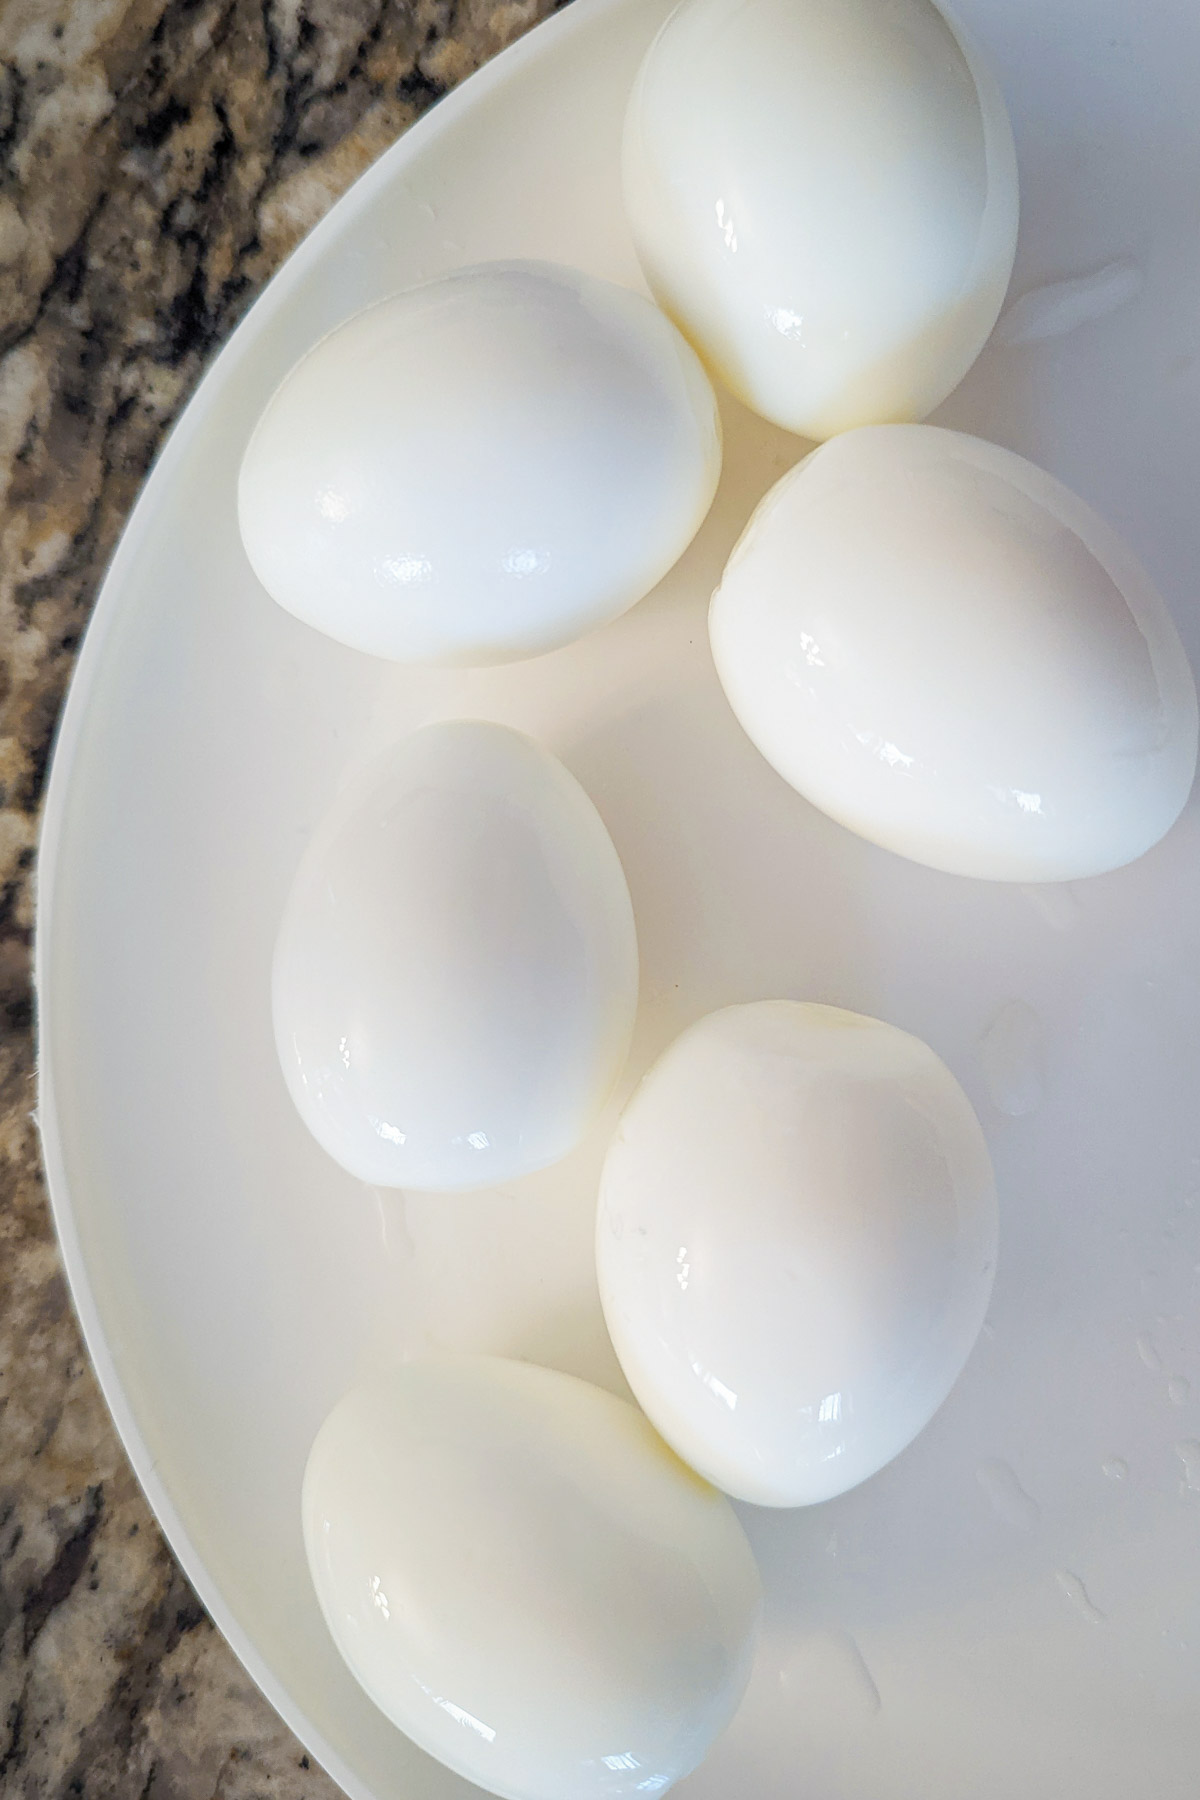 Hard boiled eggs on a platter.